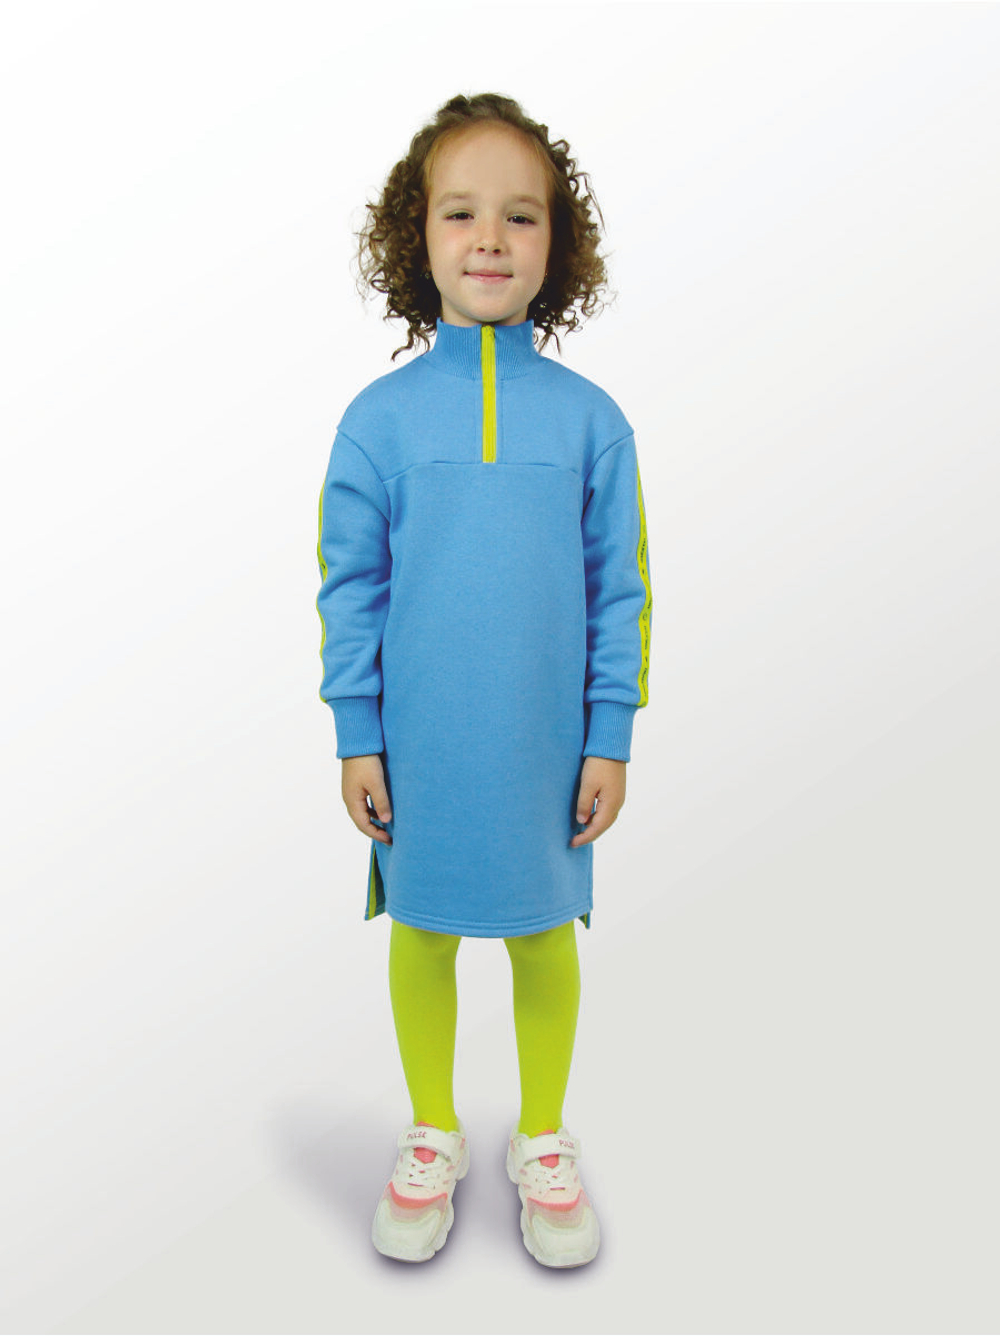 Платье для девочки, модель №1, рост 110 см, голубое